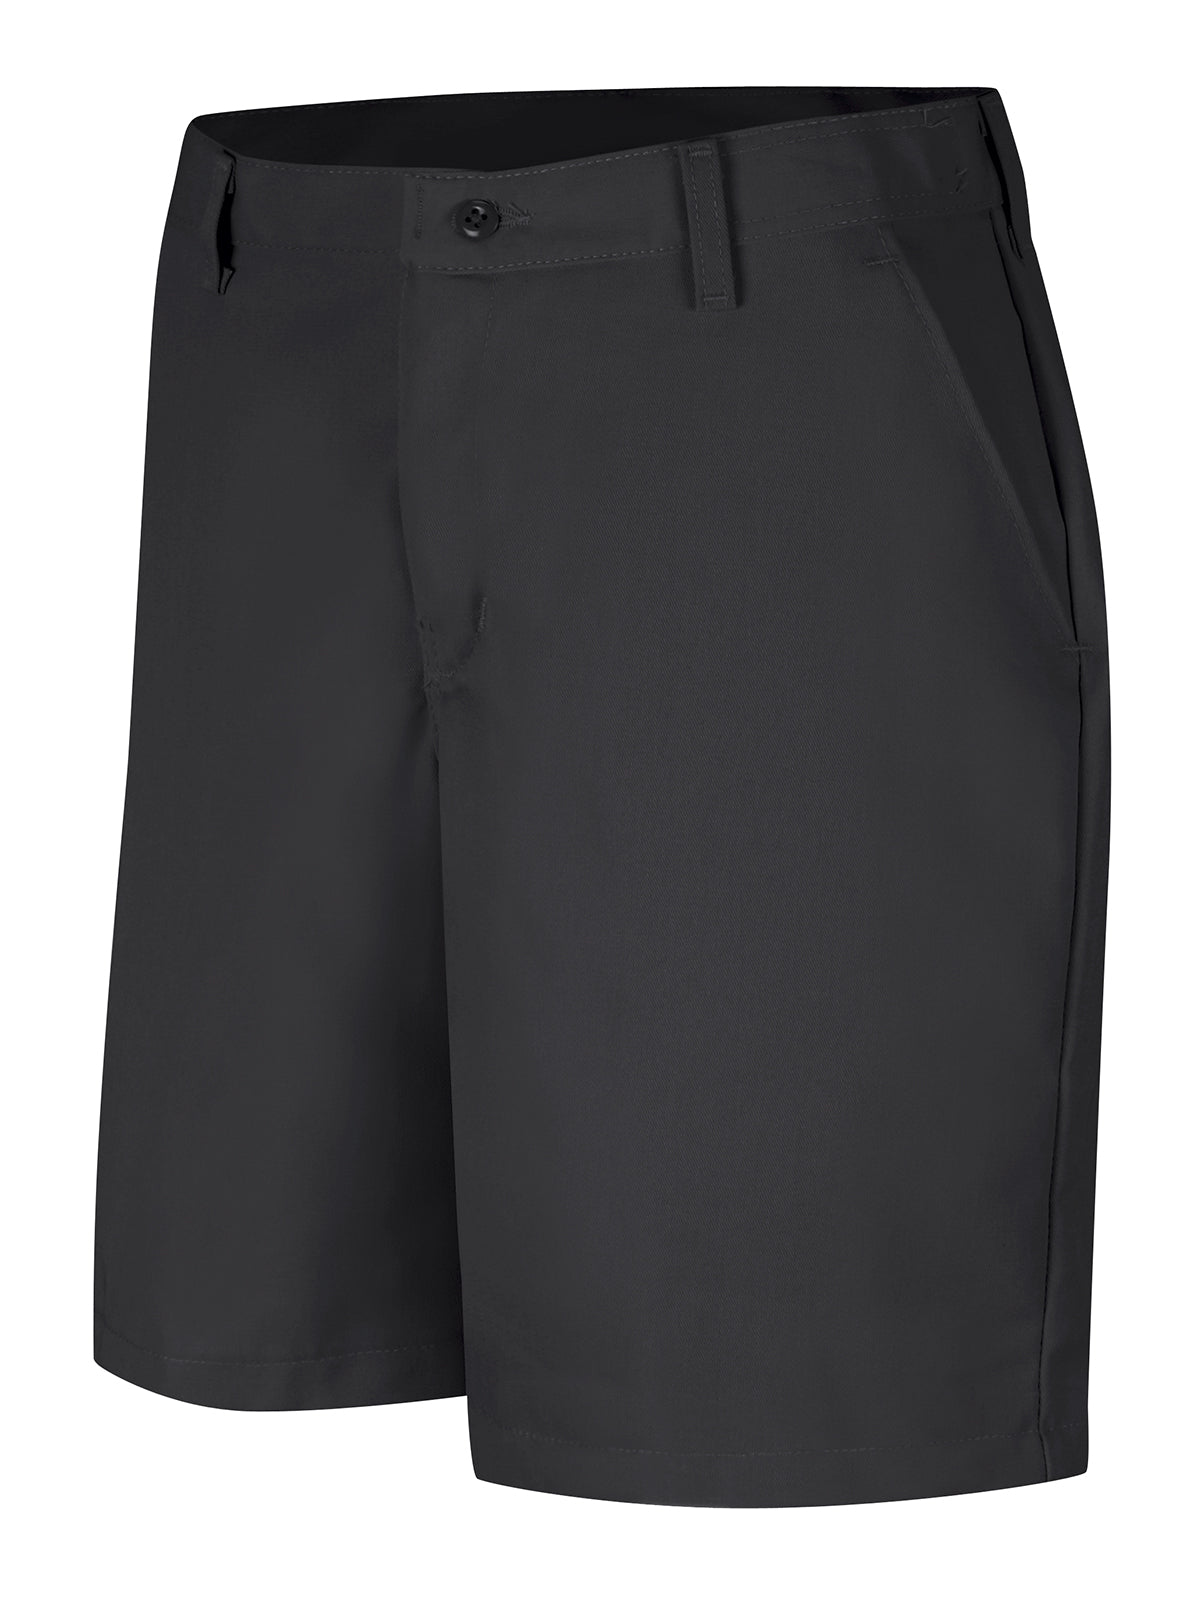 Women's Plain Front Shorts - PT27 - Black